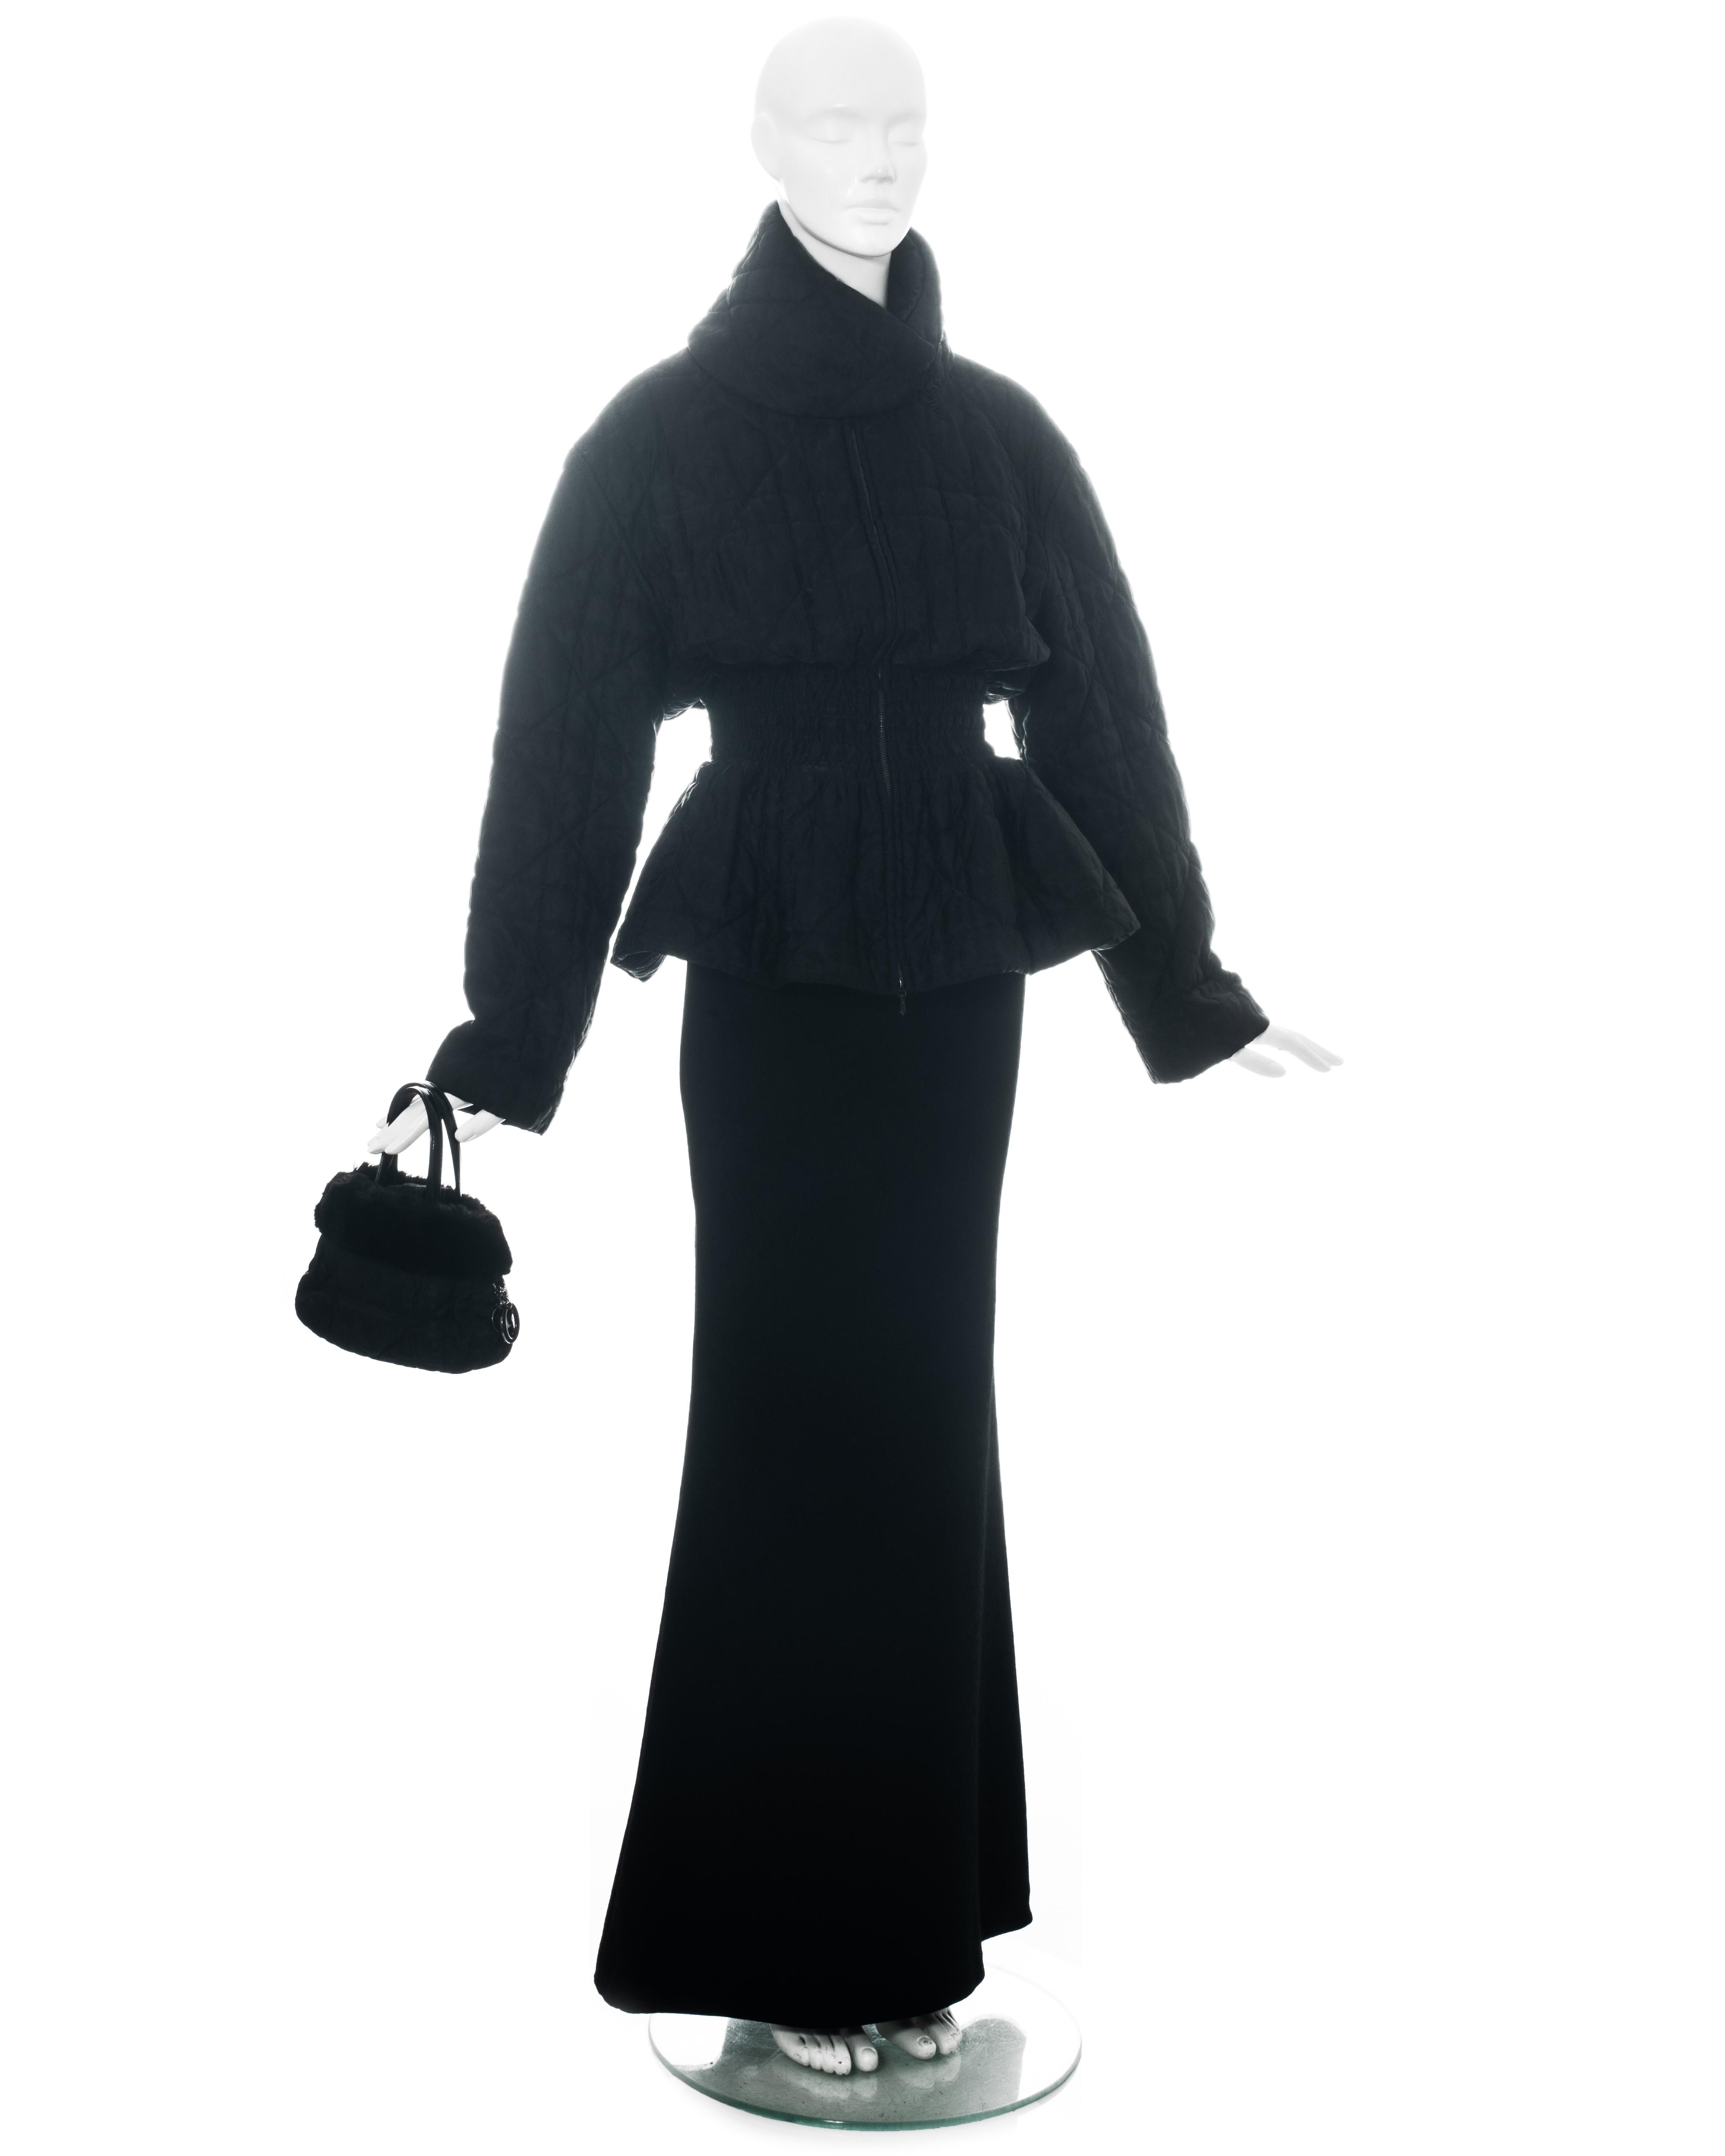 Ensemble noir 3 pièces Christian Dior by John Galliano comprenant : veste en nylon matelassé Monogram avec ceinture froncée, mini-sac à main et mini-sac à dos avec garniture en fourrure et jupe maxi en jacquard de laine. 

Automne-Hiver 1998